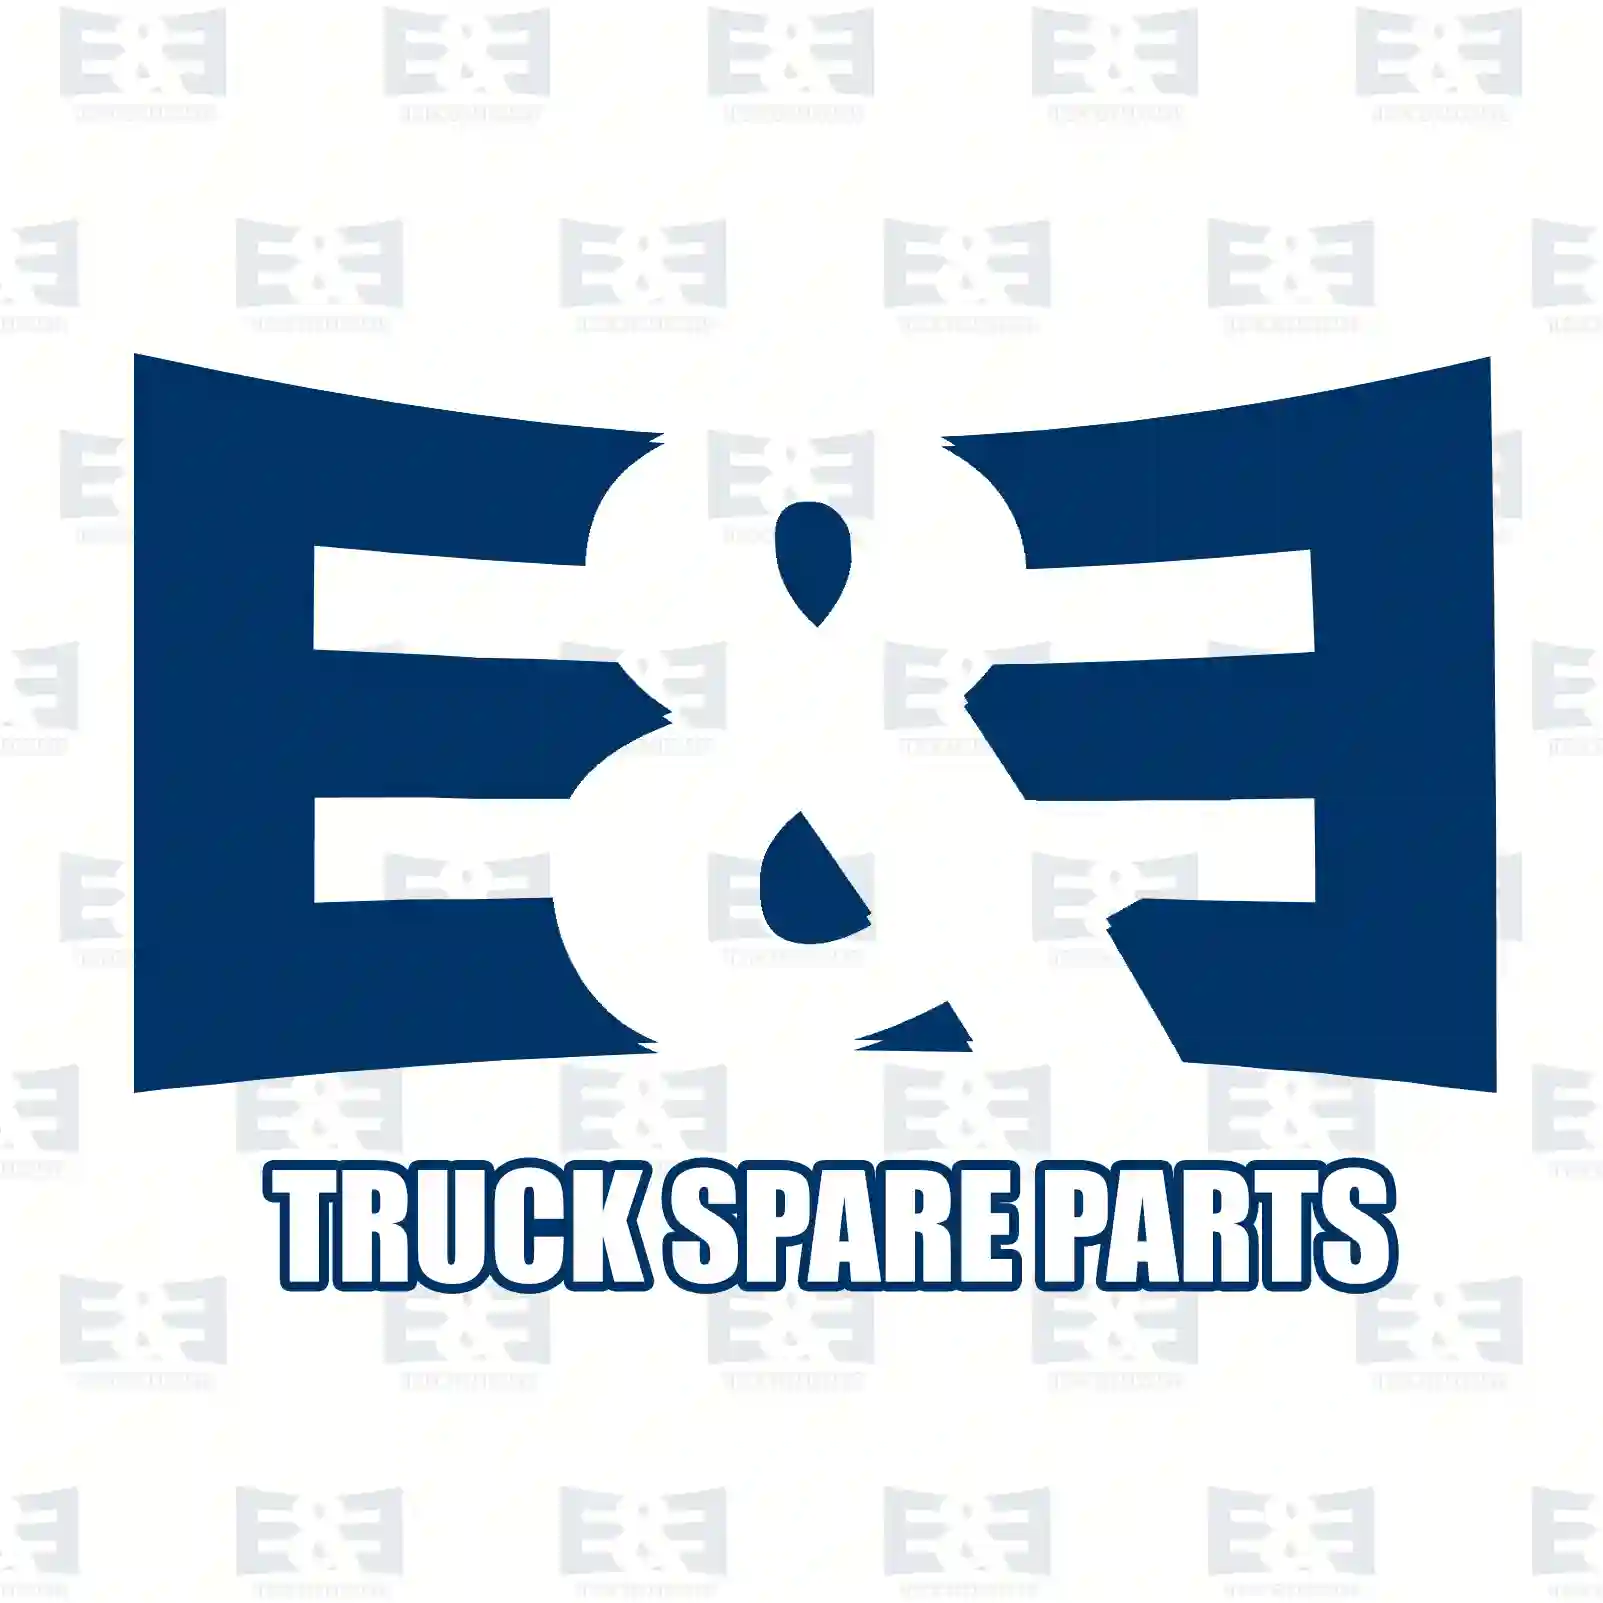 Cabin shock absorber, 2E2276588, 20960913, 21137458, 3198859, ZG41160-0008 ||  2E2276588 E&E Truck Spare Parts | Truck Spare Parts, Auotomotive Spare Parts Cabin shock absorber, 2E2276588, 20960913, 21137458, 3198859, ZG41160-0008 ||  2E2276588 E&E Truck Spare Parts | Truck Spare Parts, Auotomotive Spare Parts